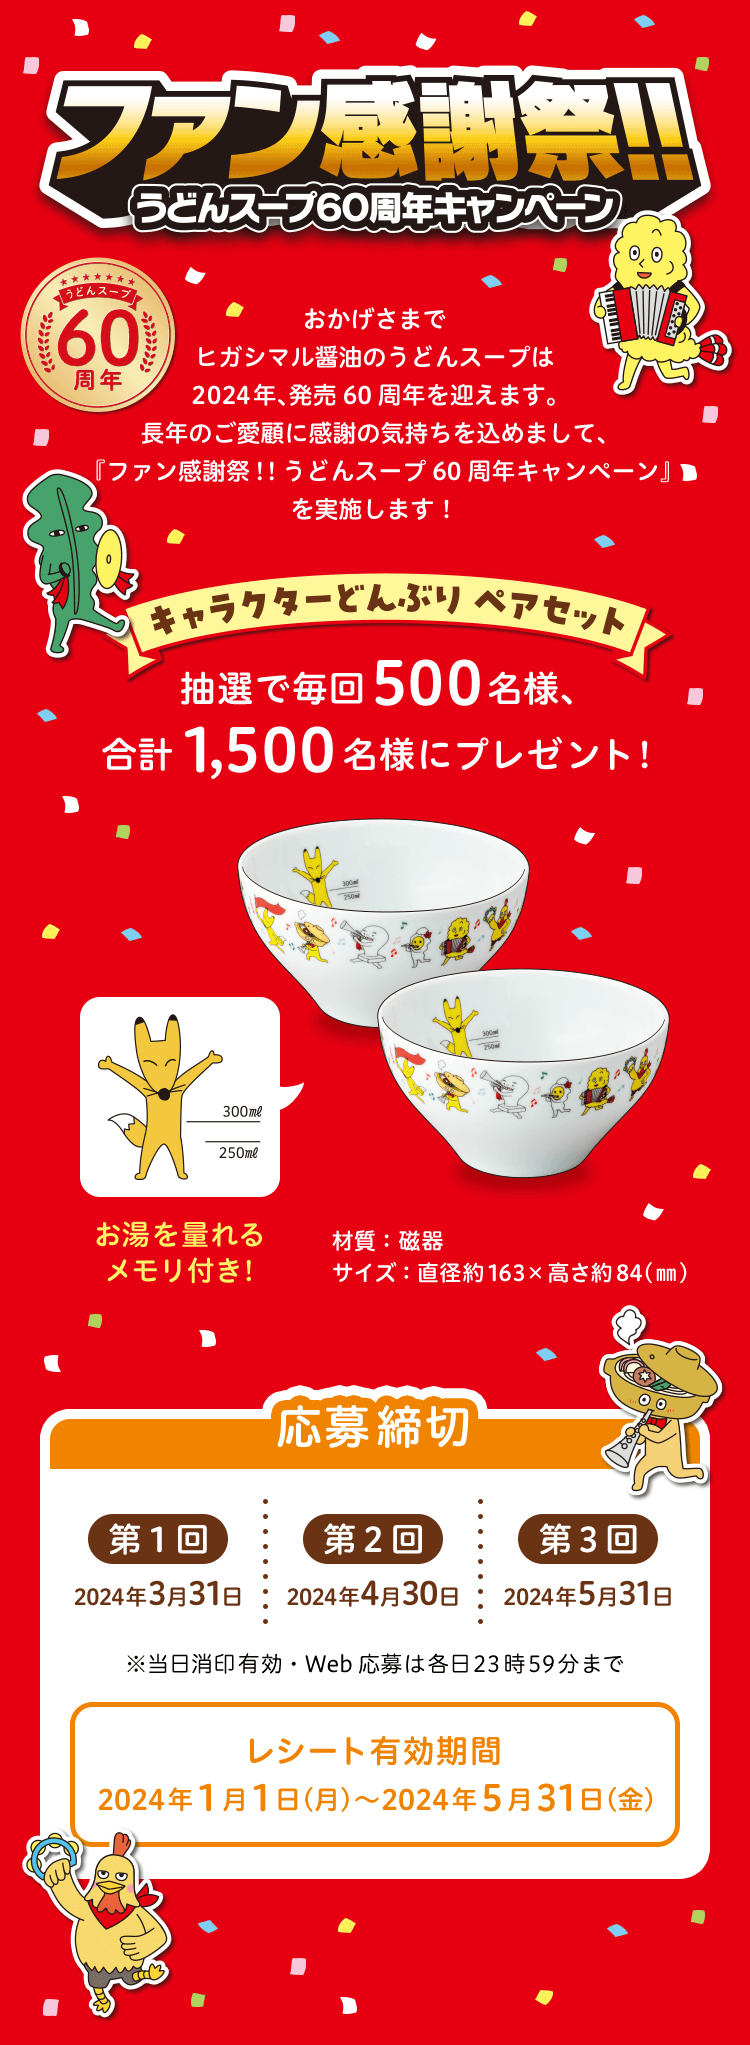 ファン感謝祭!! うどんスープ60周年キャンペーン 応募締切